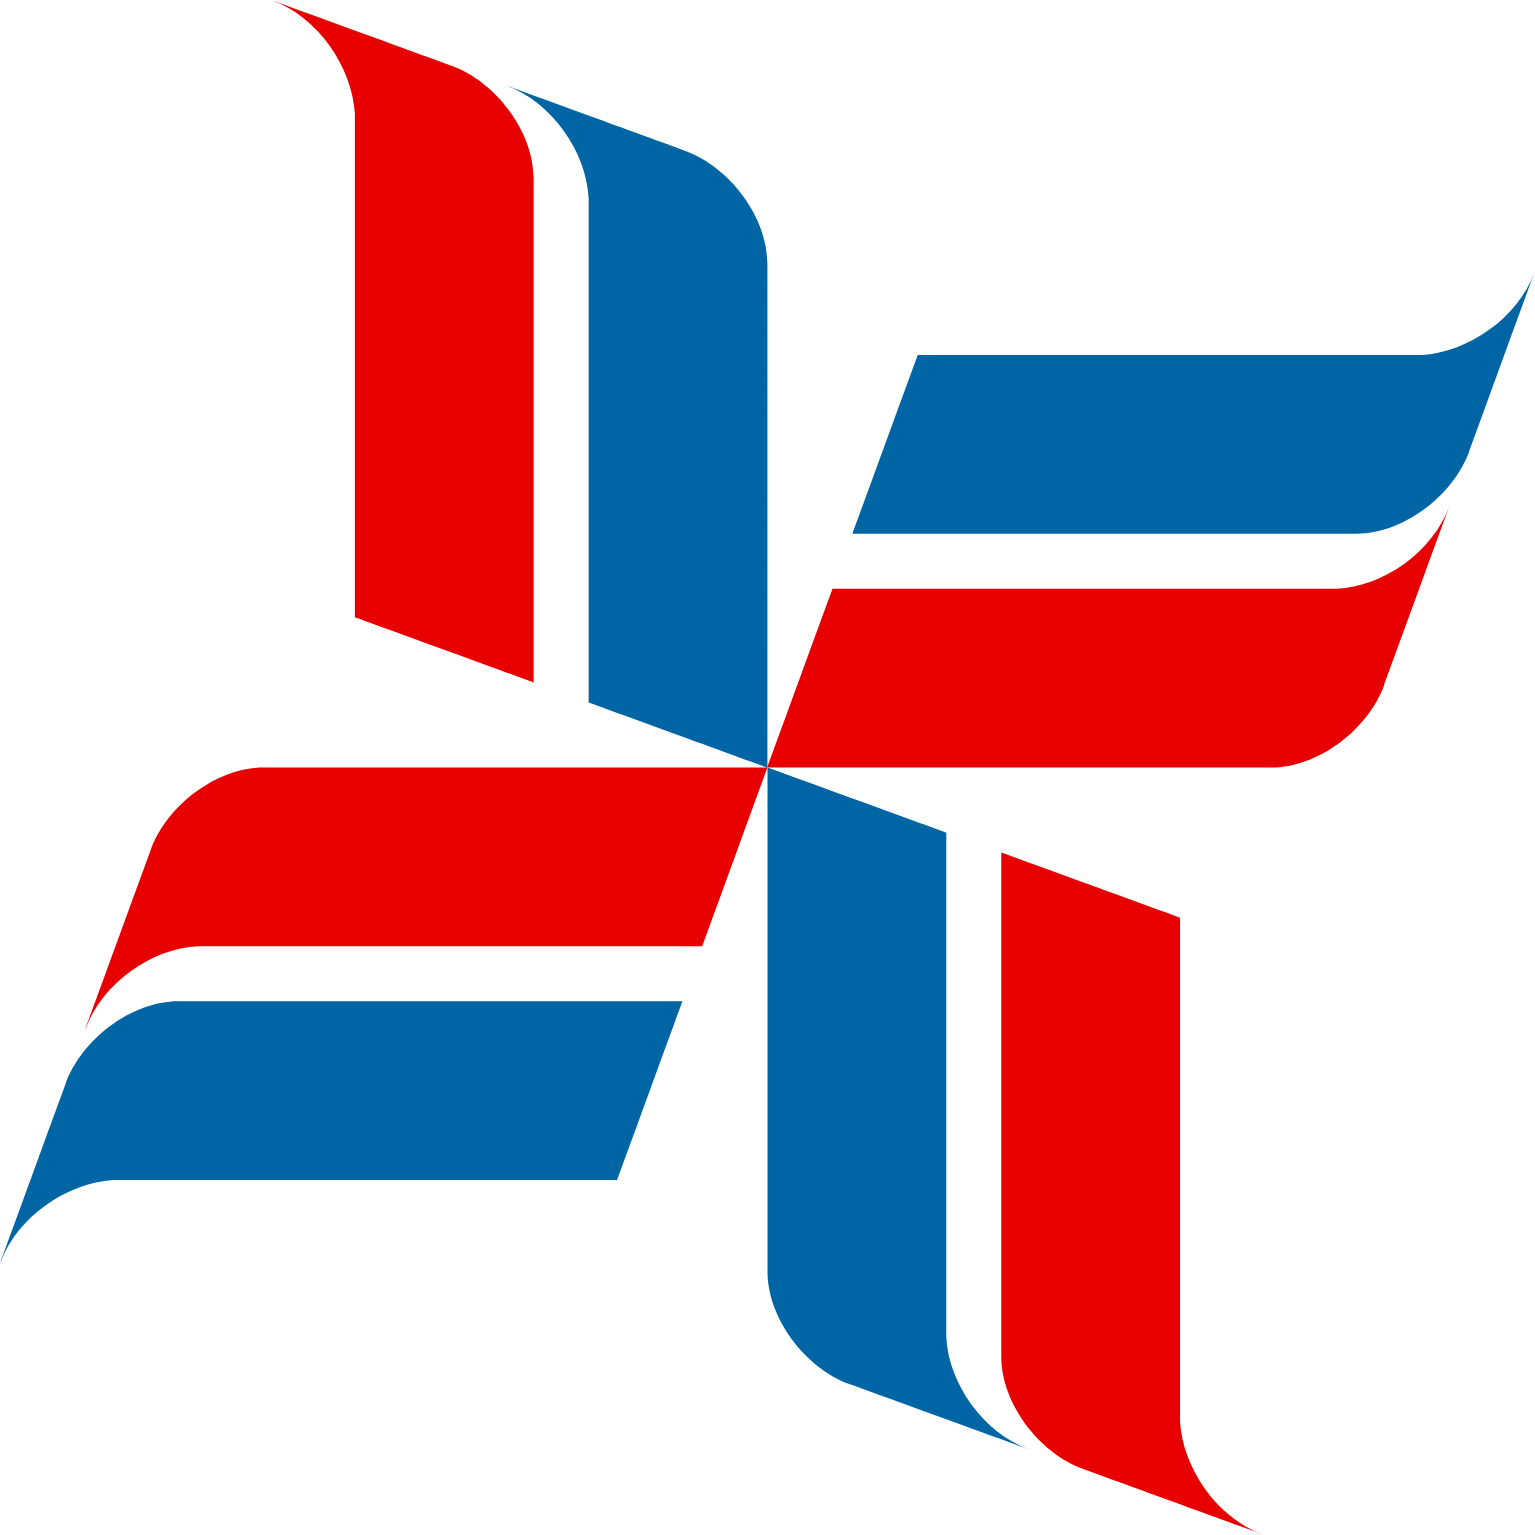 Bristow Group logo (PNG transparent)